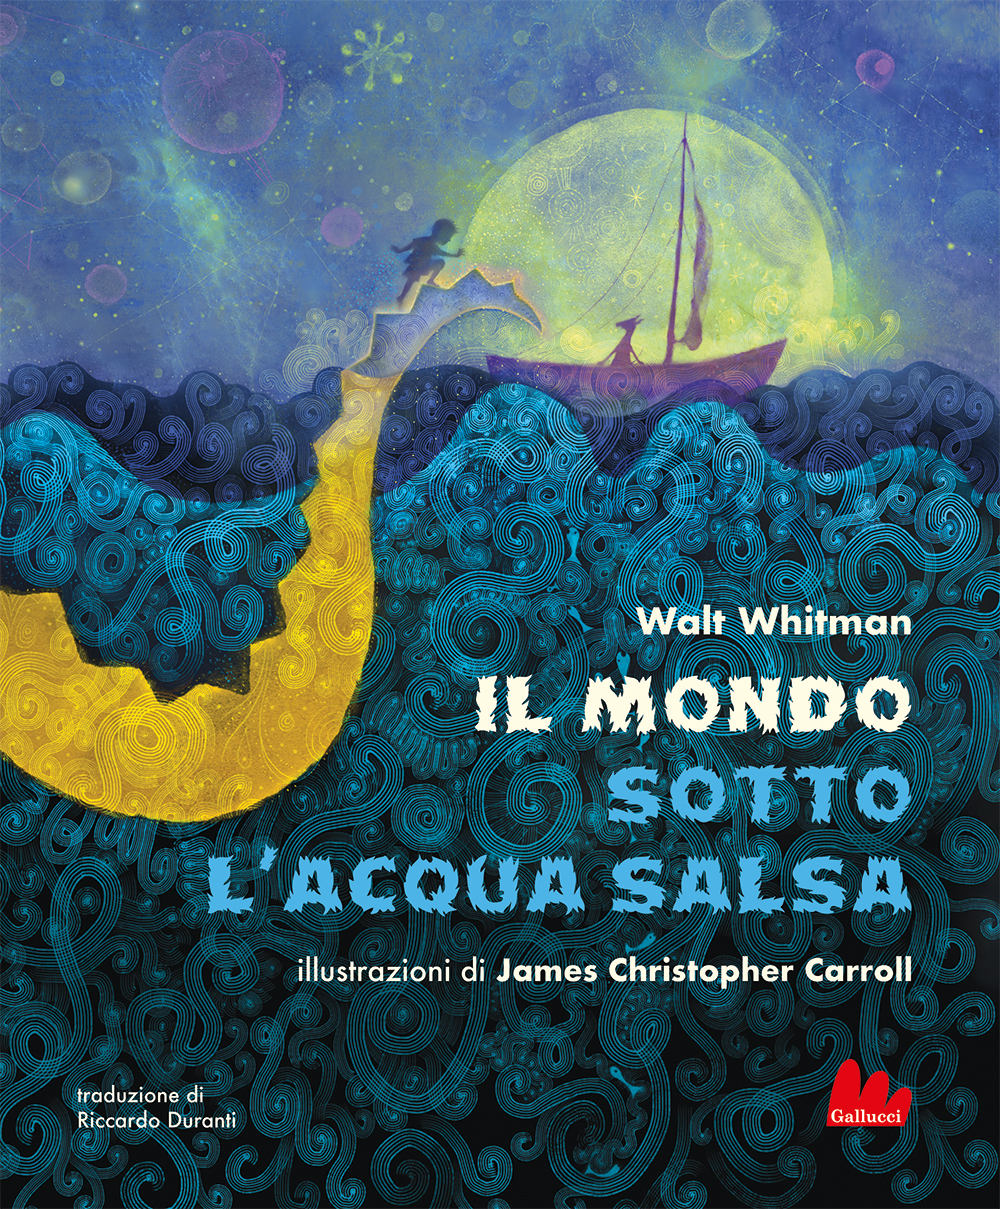 Il mondo sotto l'acqua salsa • Gallucci Editore